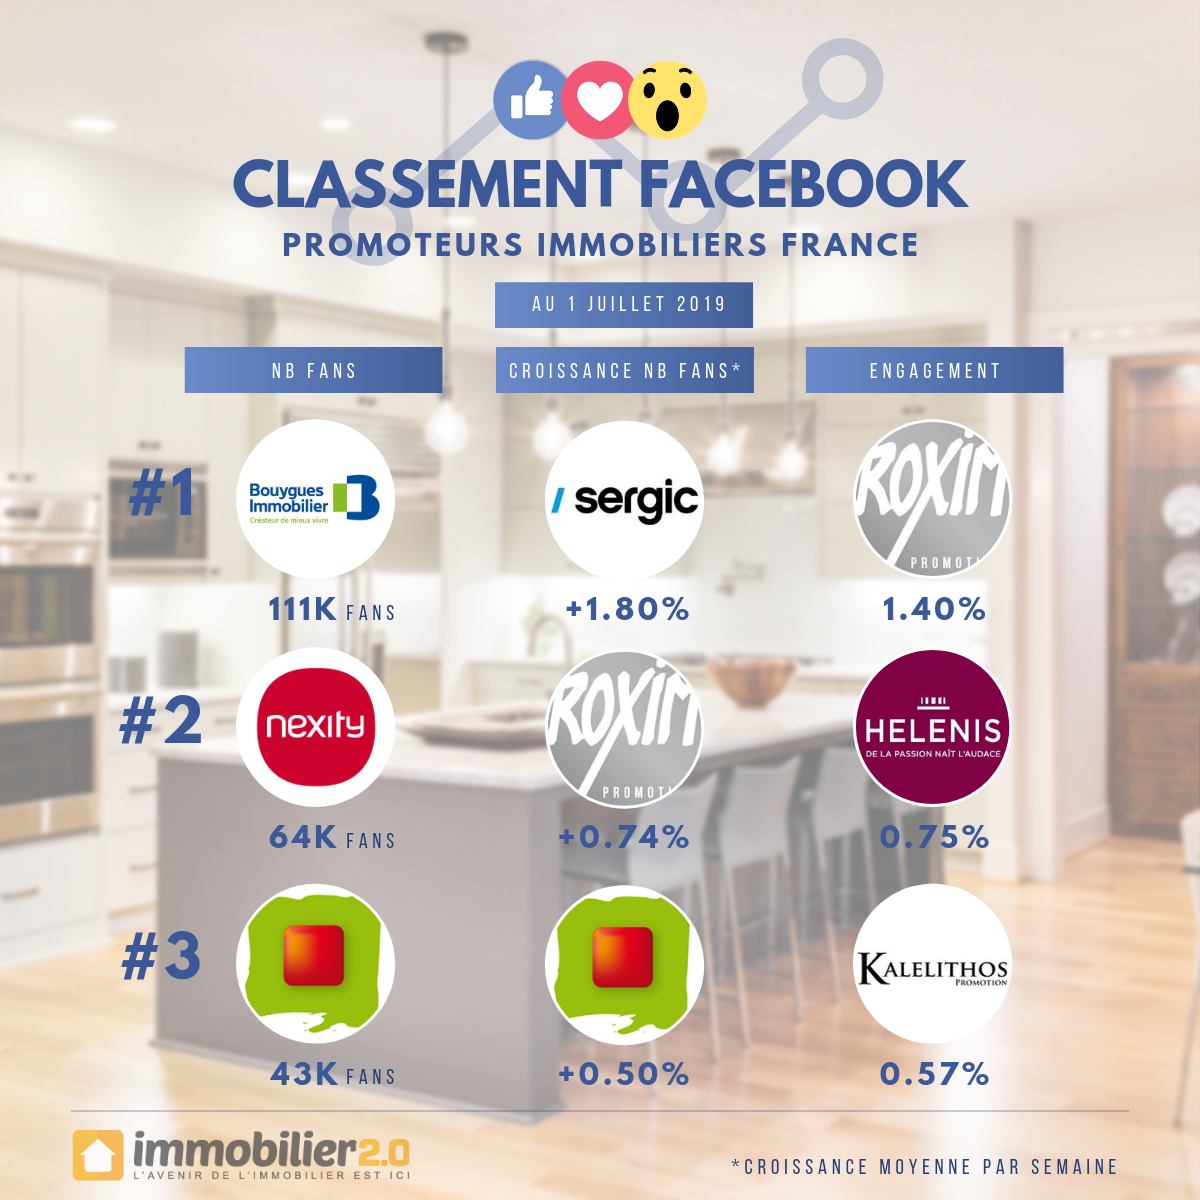 Classement Facebook Promoteurs Immobiliers France Juillet 2019